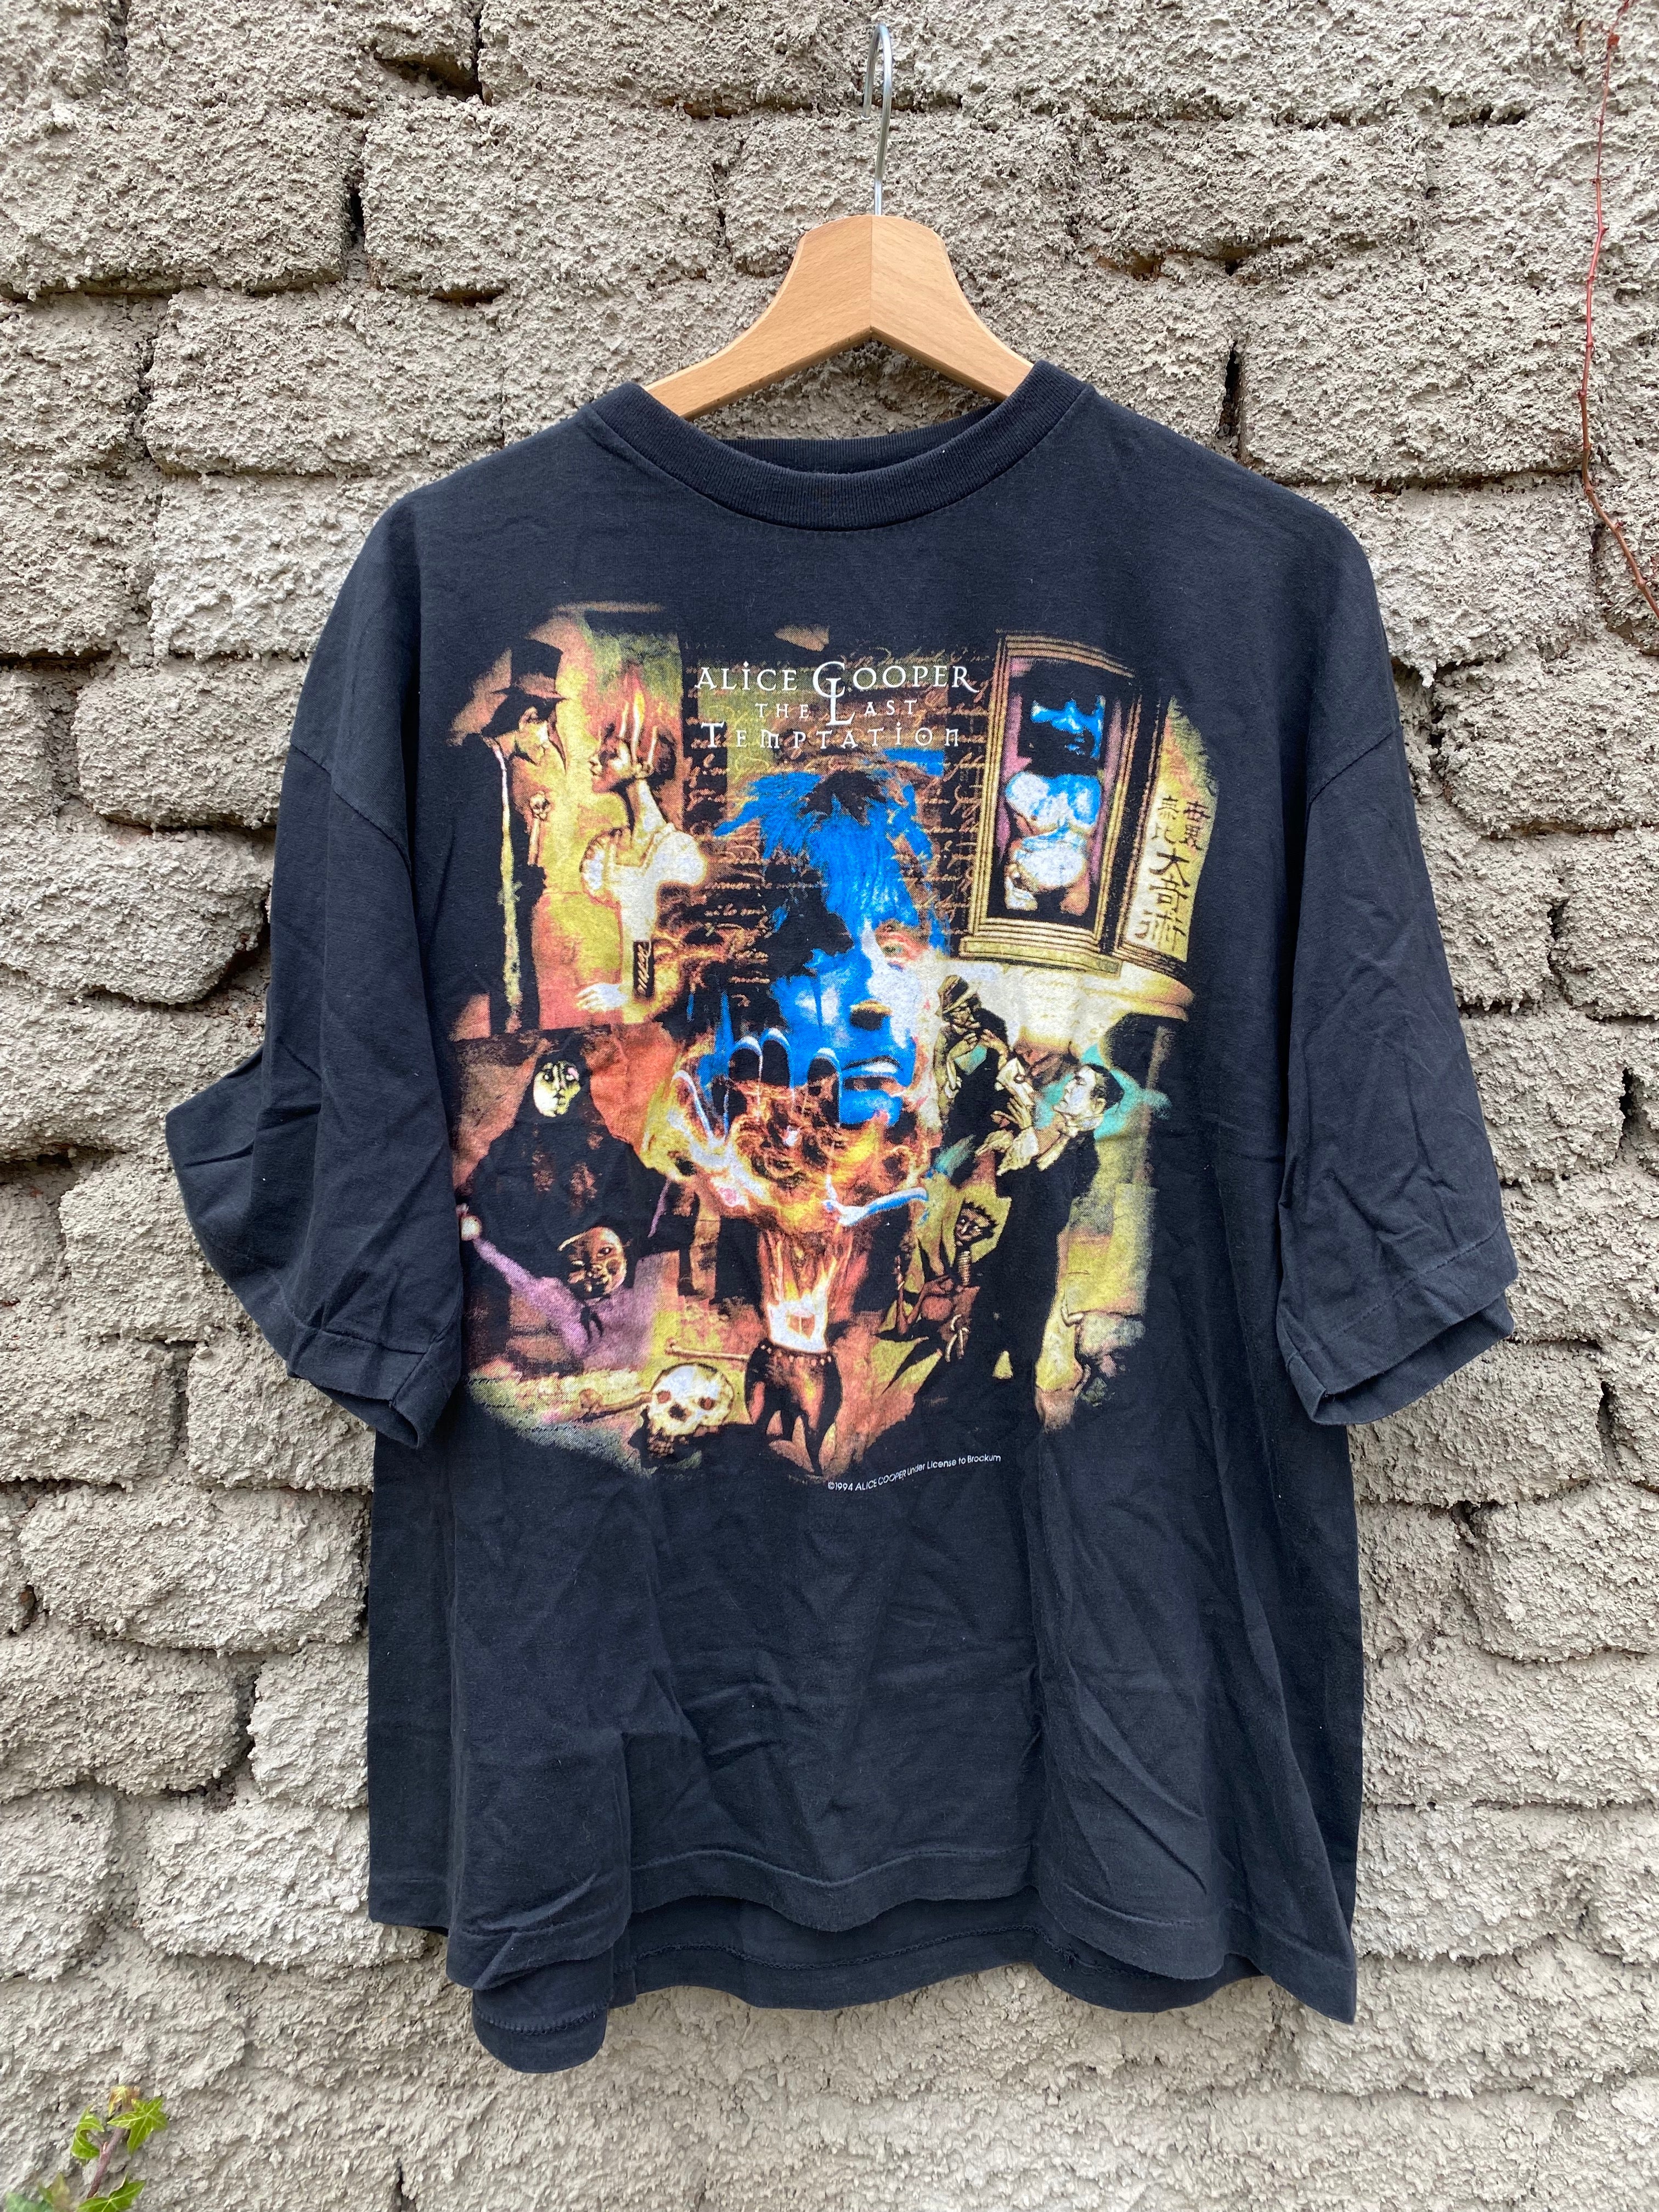 Vintage Alice Cooper "The Last Temptation" 1994 t-shirt - size XL